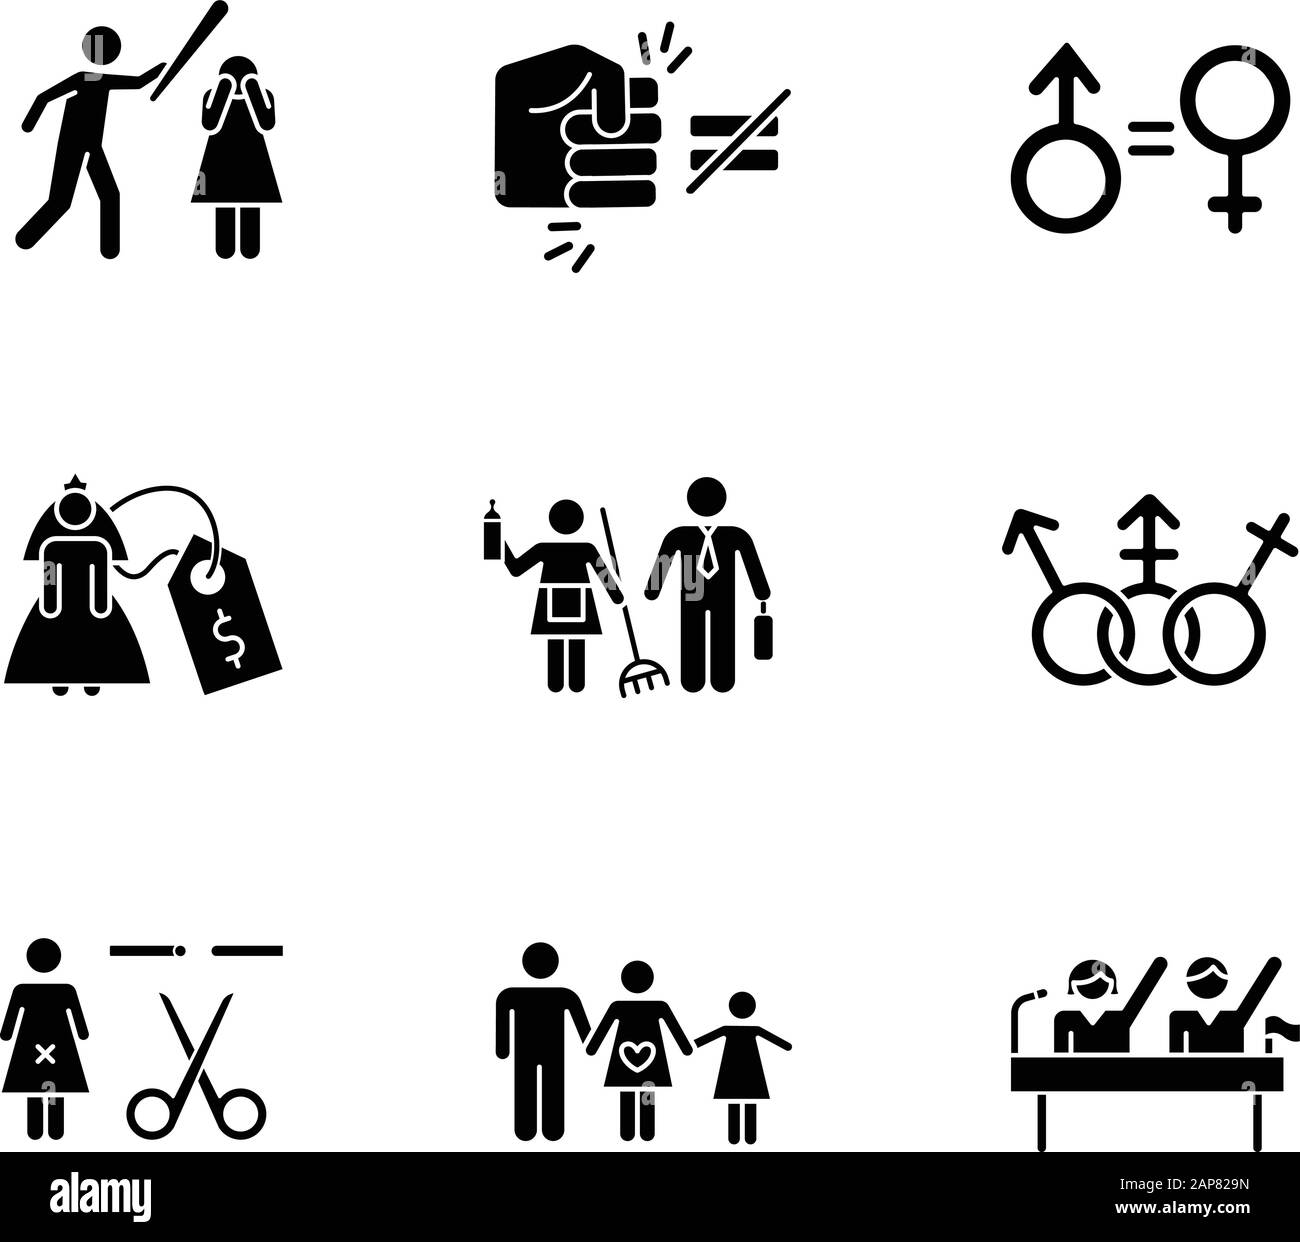 Violencia de género Imágenes de stock en blanco y negro - Alamy